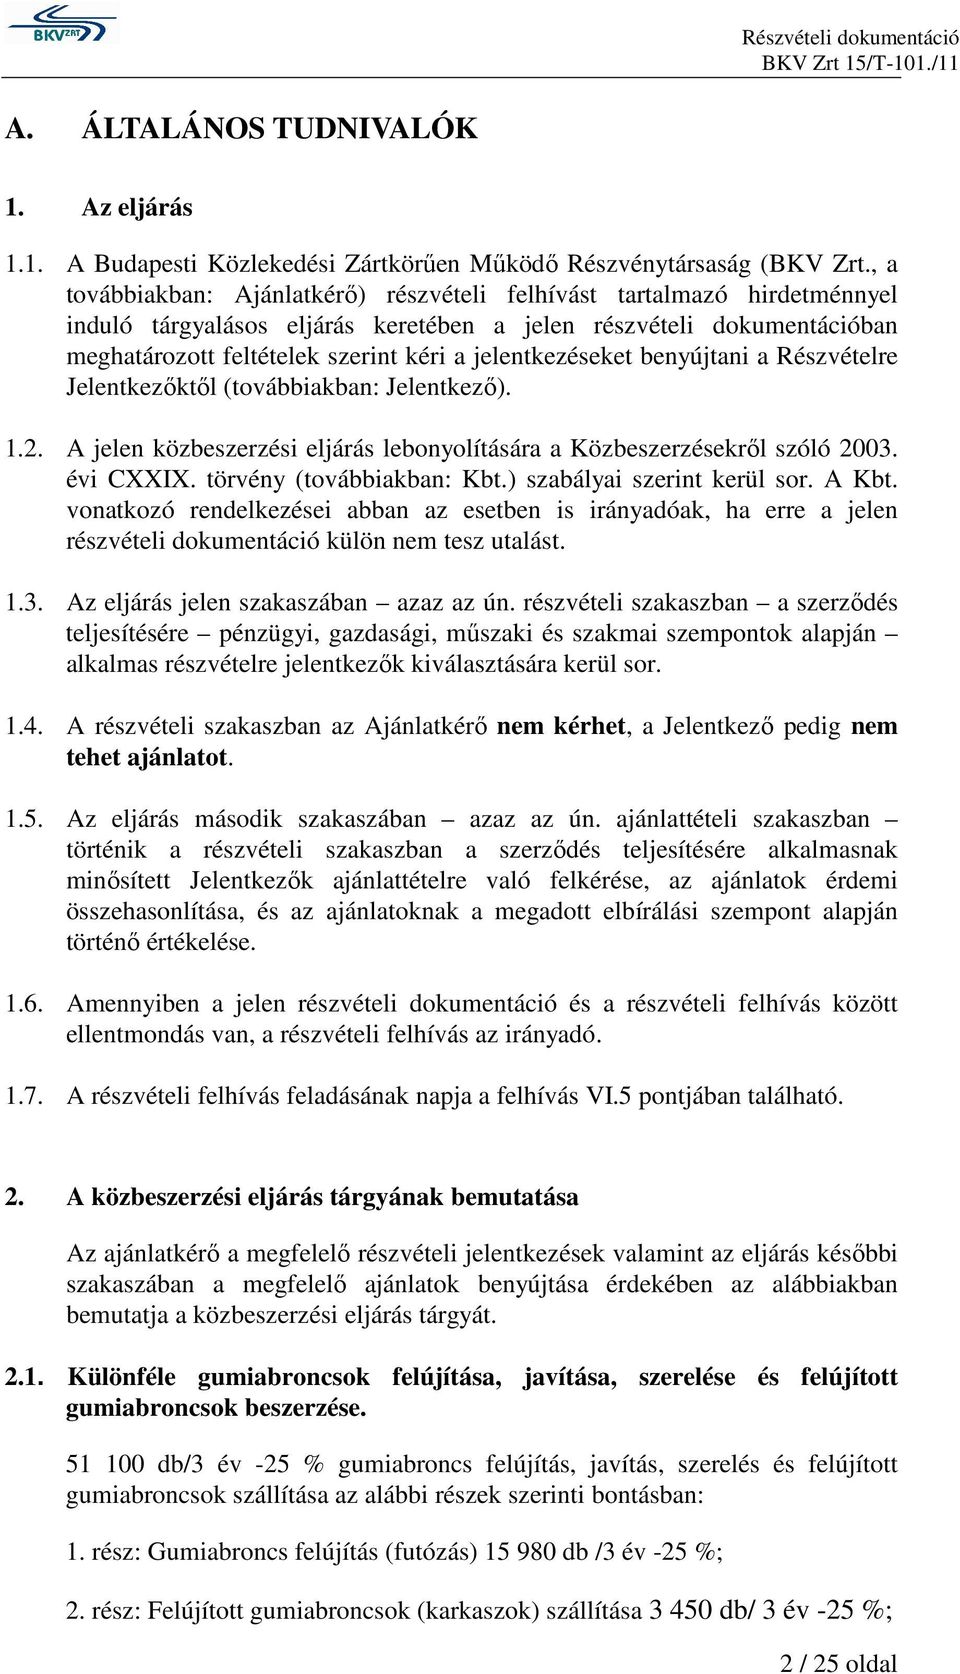 jelentkezéseket benyújtani a Részvételre Jelentkezıktıl (továbbiakban: Jelentkezı). 1.2. A jelen közbeszerzési eljárás lebonyolítására a Közbeszerzésekrıl szóló 2003. évi CXXIX.